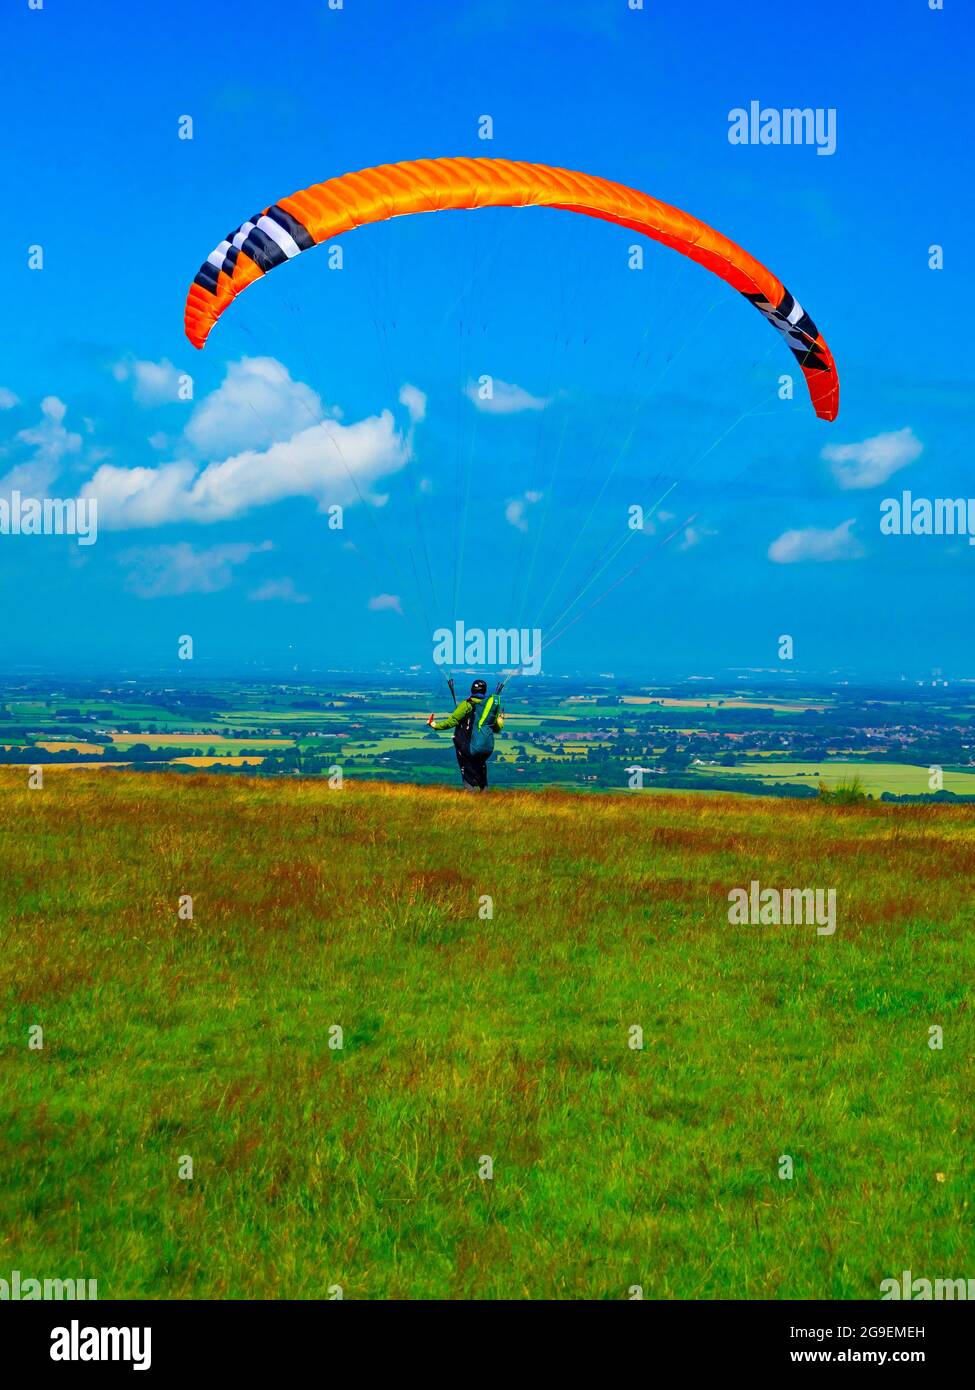 Un homme avec un parachute ascensionnel orange qui tente de se départir dans un vent trop faible sur les landes du yorkshire Banque D'Images